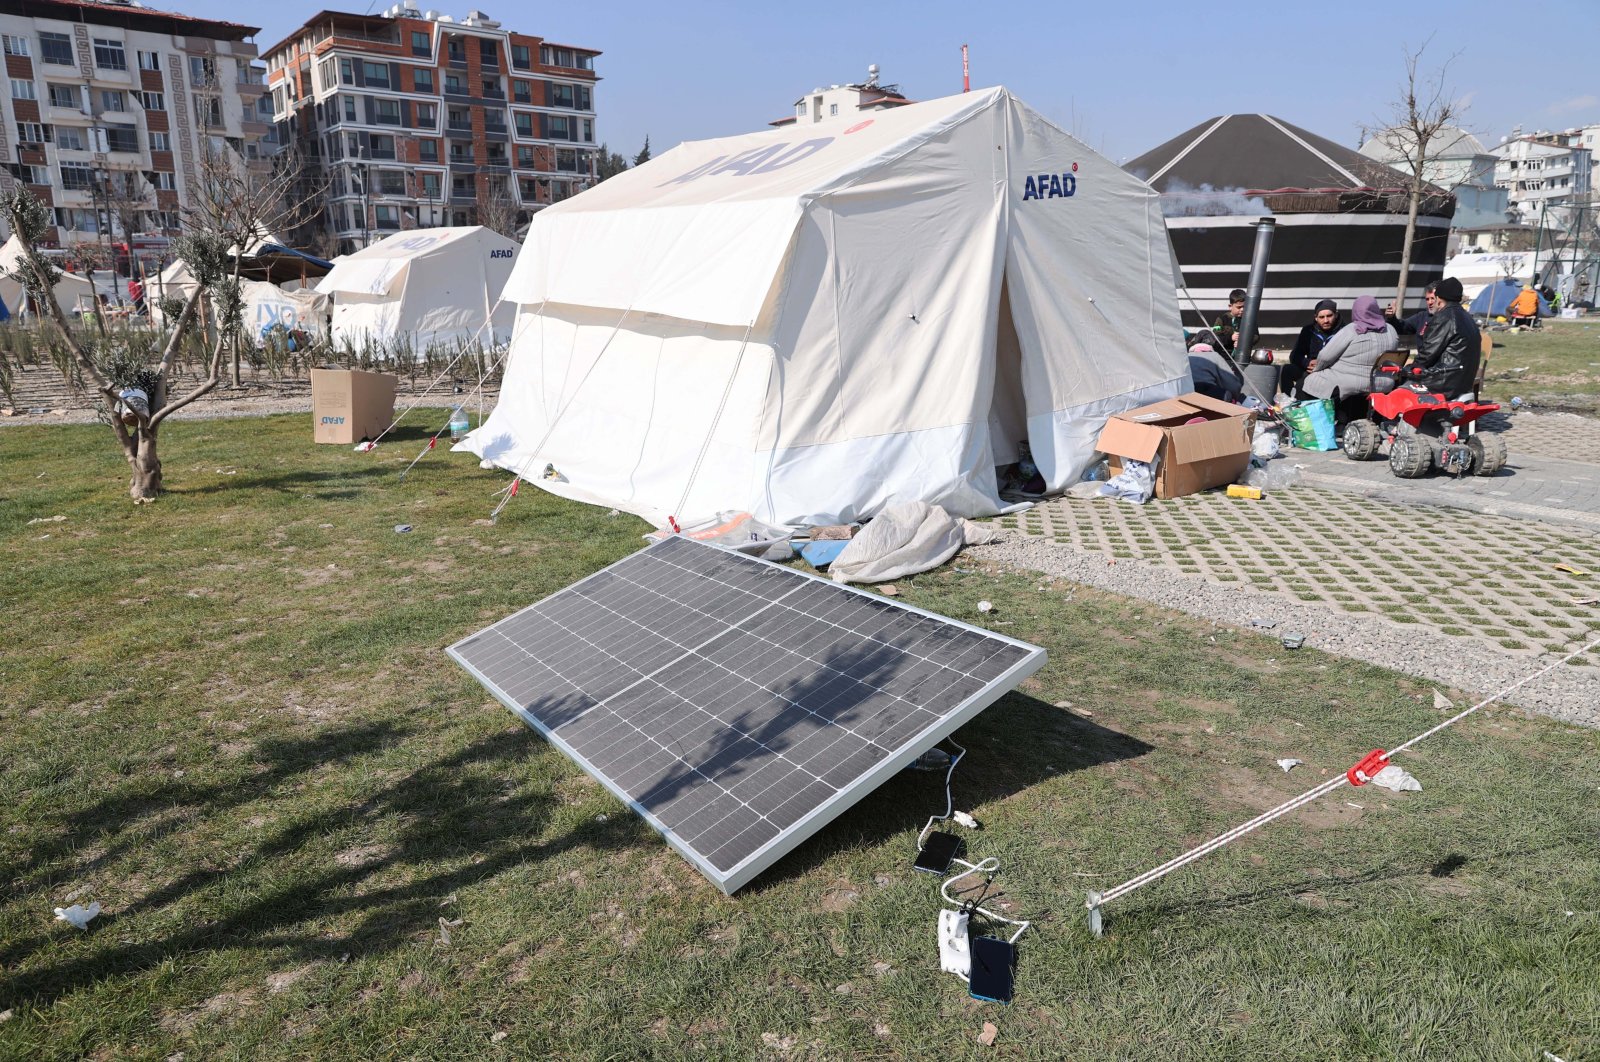 A solar panel is seen in a tent city in Hatay, Türkiye, Feb. 15, 2023. (AA Photo)